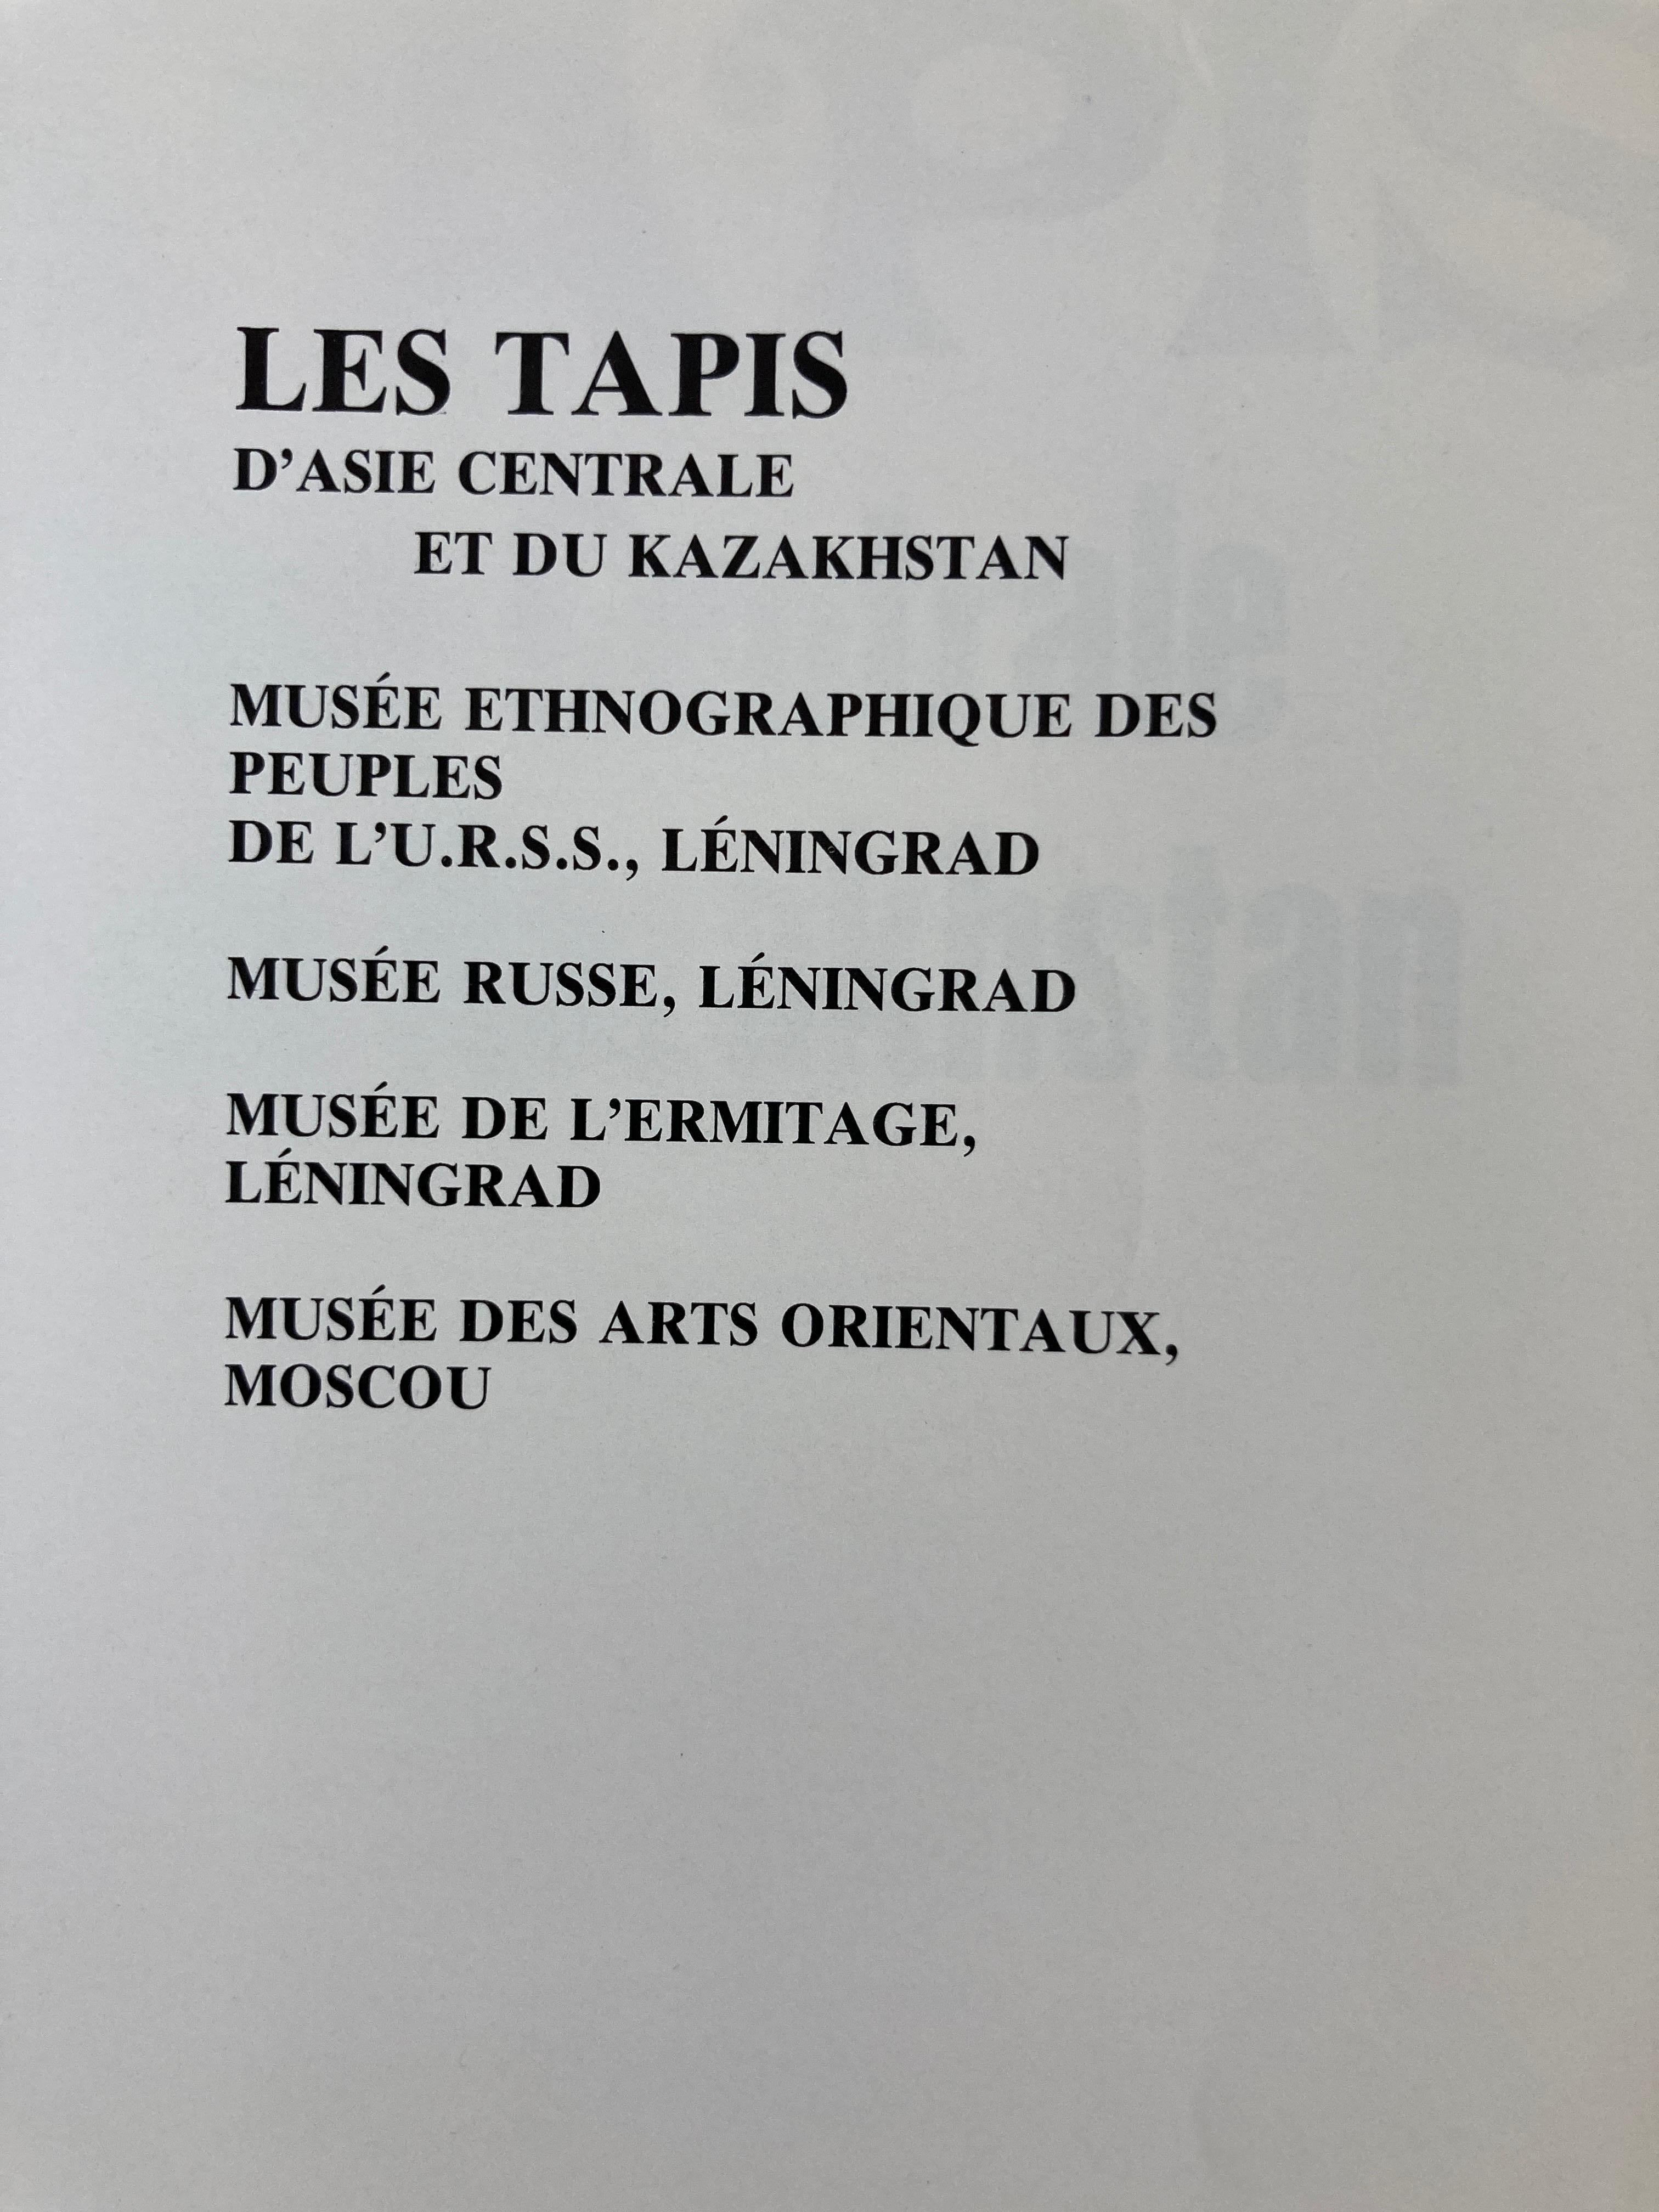 Les Tapis d'asie Centrale et du Kazakhstan 'Français' Relié, 1 Janvier, 1984 In Good Condition In North Hollywood, CA